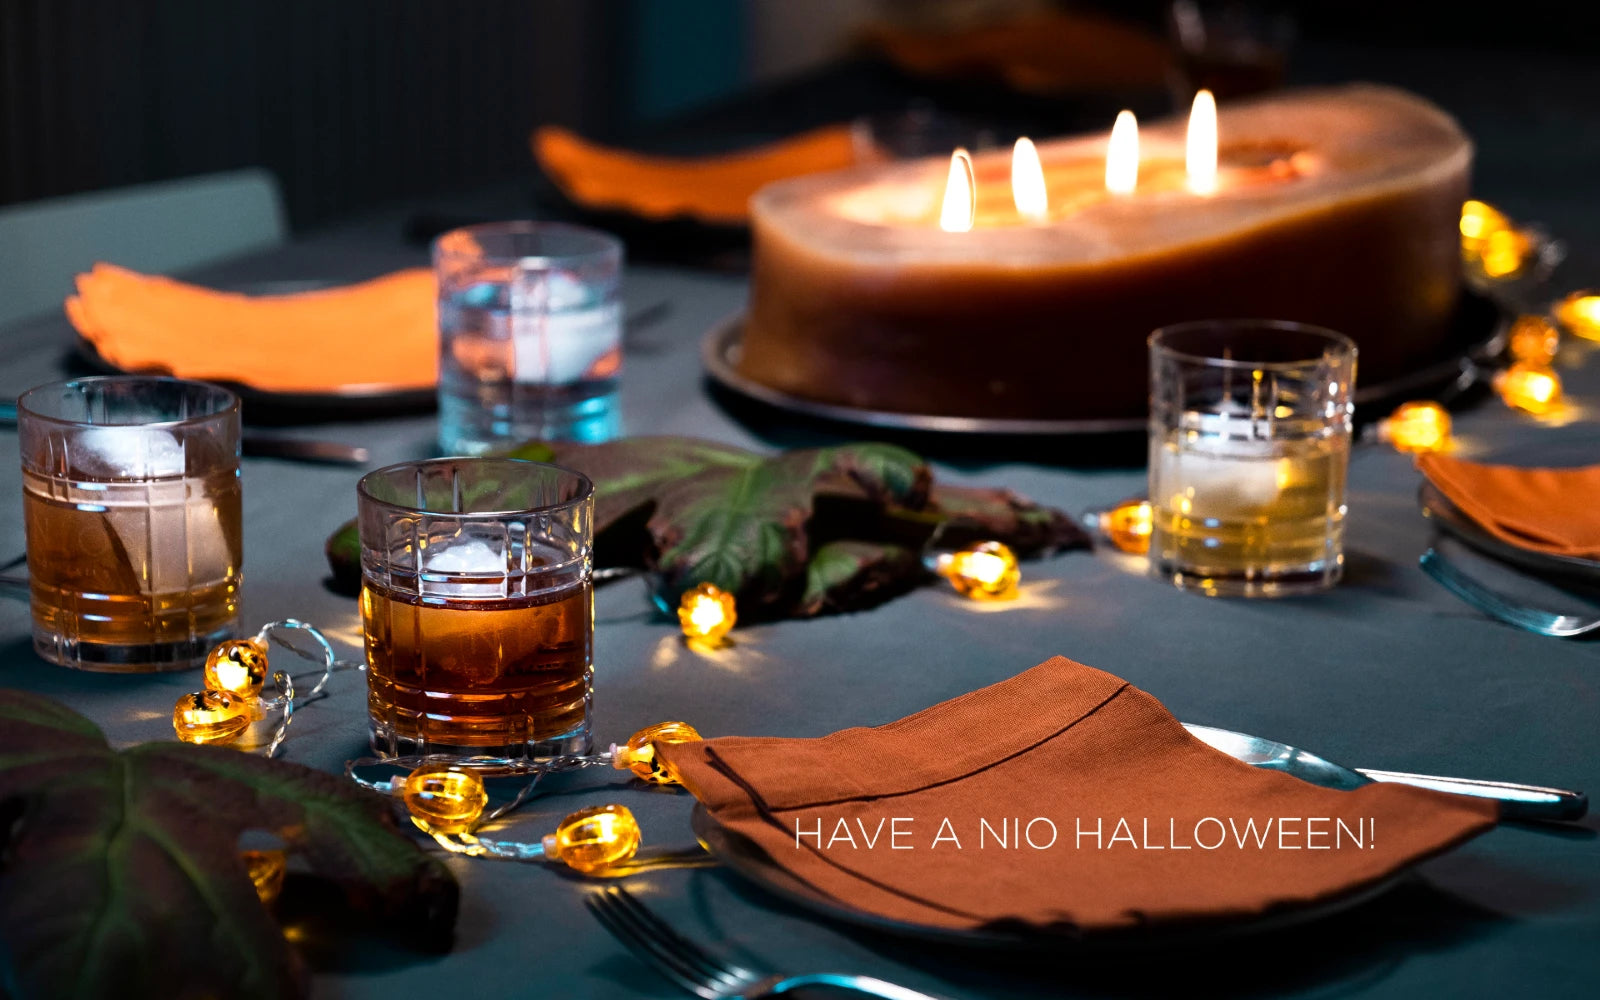 tavola con candele e bicchieri cocktail con ghiaccio con scritta have a NIO halloween